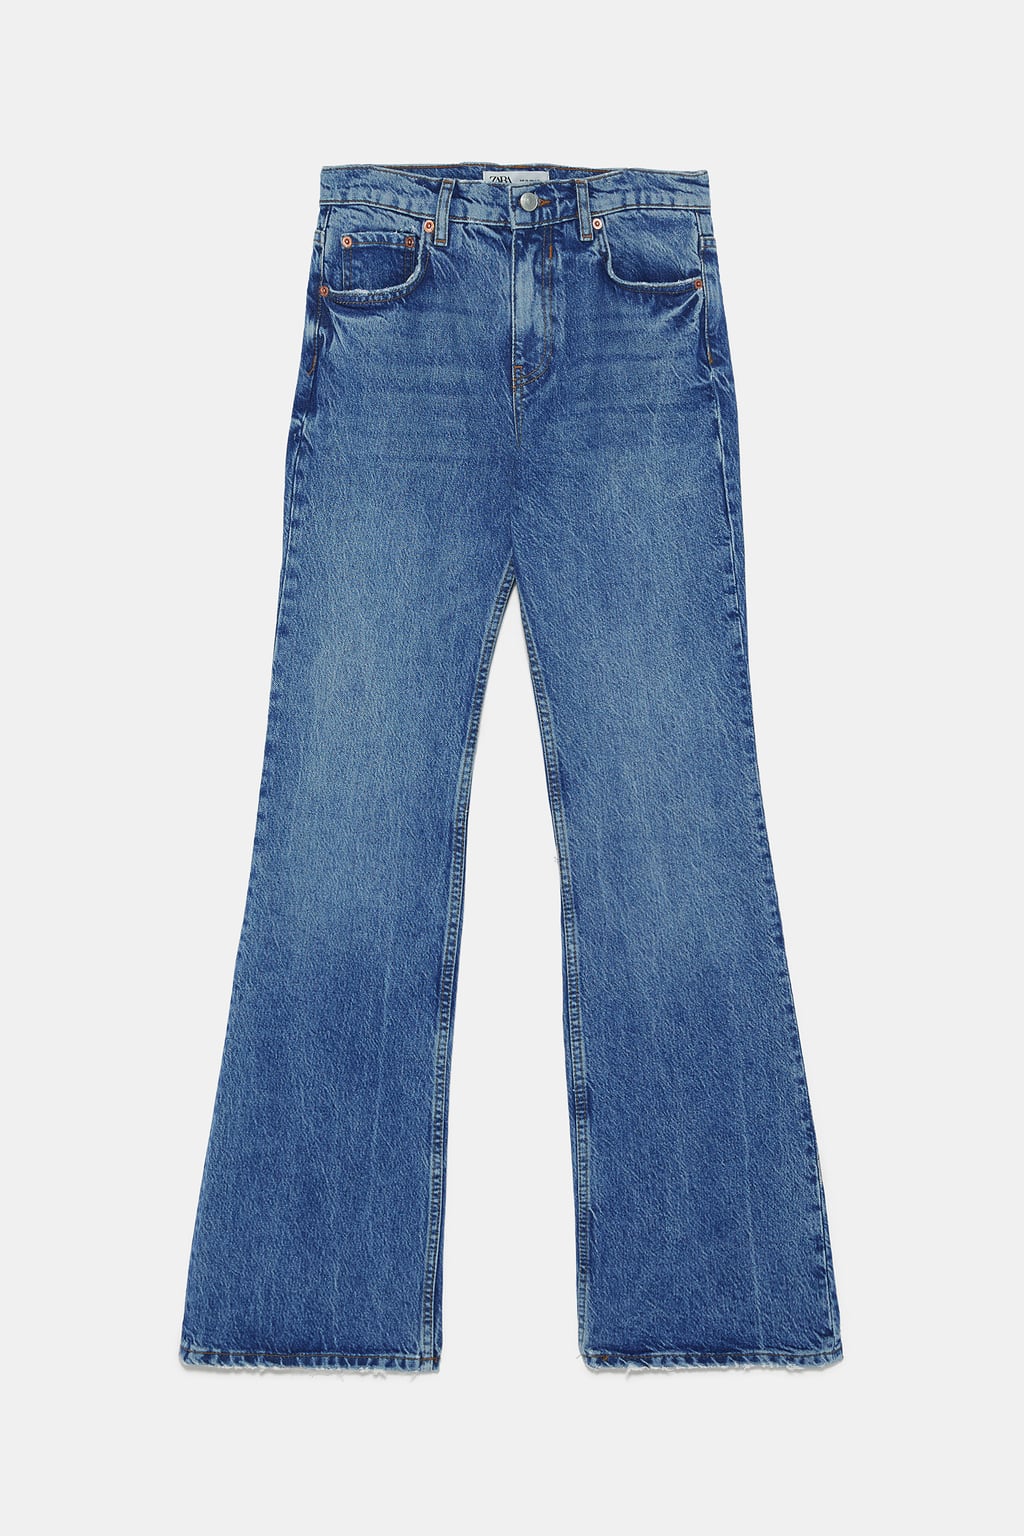 Jeans vintage høsten 2019